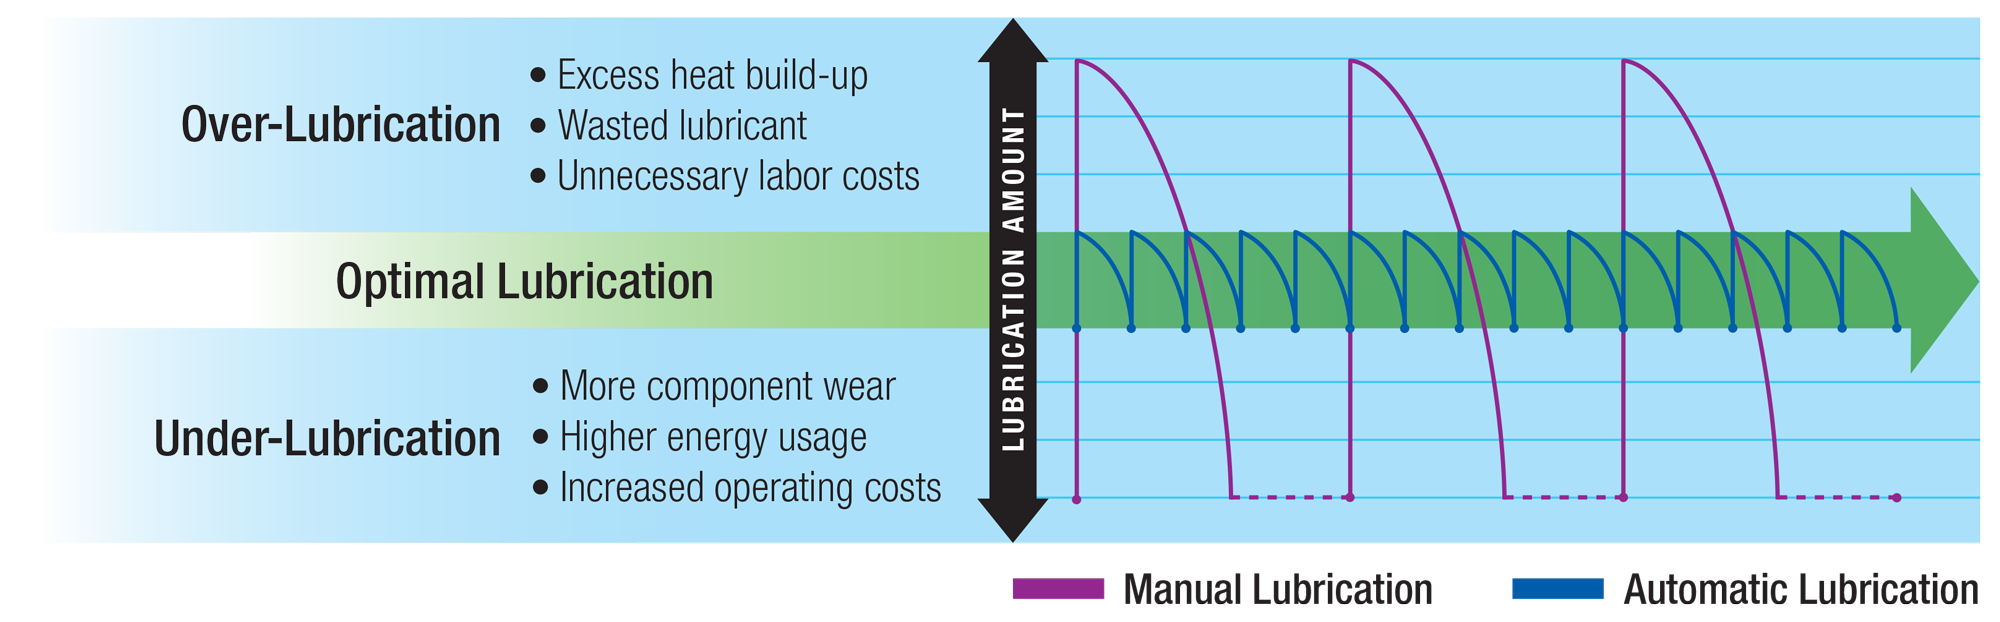 automatic lubrication chart